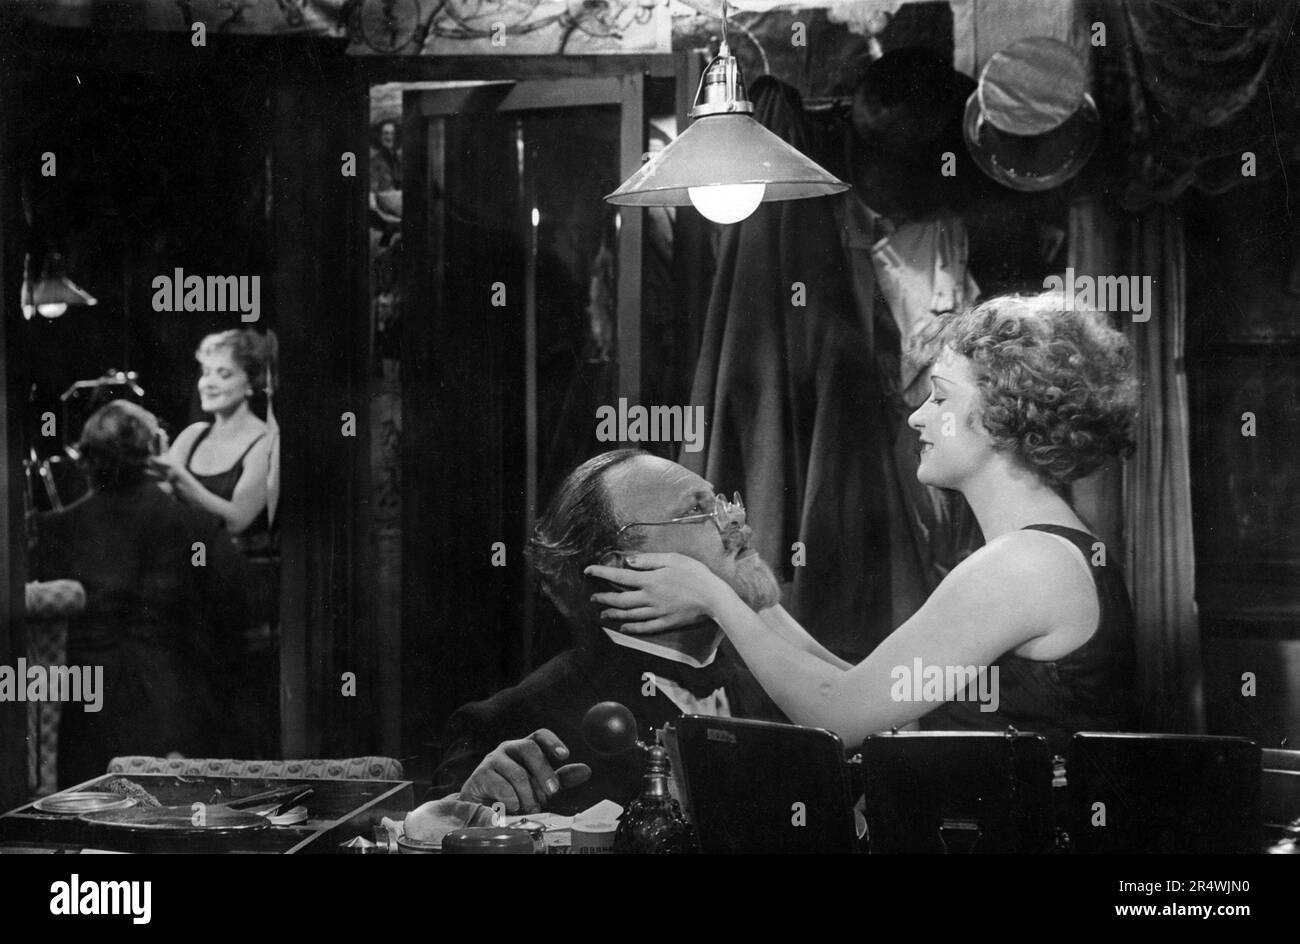 L'Ange Bleu est un tragicomedic allemand 1930 film réalisé par Josef von Sternberg et avec Emil Jannings, Marlene Dietrich et Kurt Gerron. Il est basé sur le roman de Heinrich Mann et le professeur Unrat situé dans l'Allemagne de Weimar. L'Ange bleu présente la transformation d'un homme tragique d'un professeur respectable pour un cabaret clown, et sa descente dans la folie. Le film est considéré comme le premier grand film sonore allemand Dietrich, et a une renommée internationale. Banque D'Images